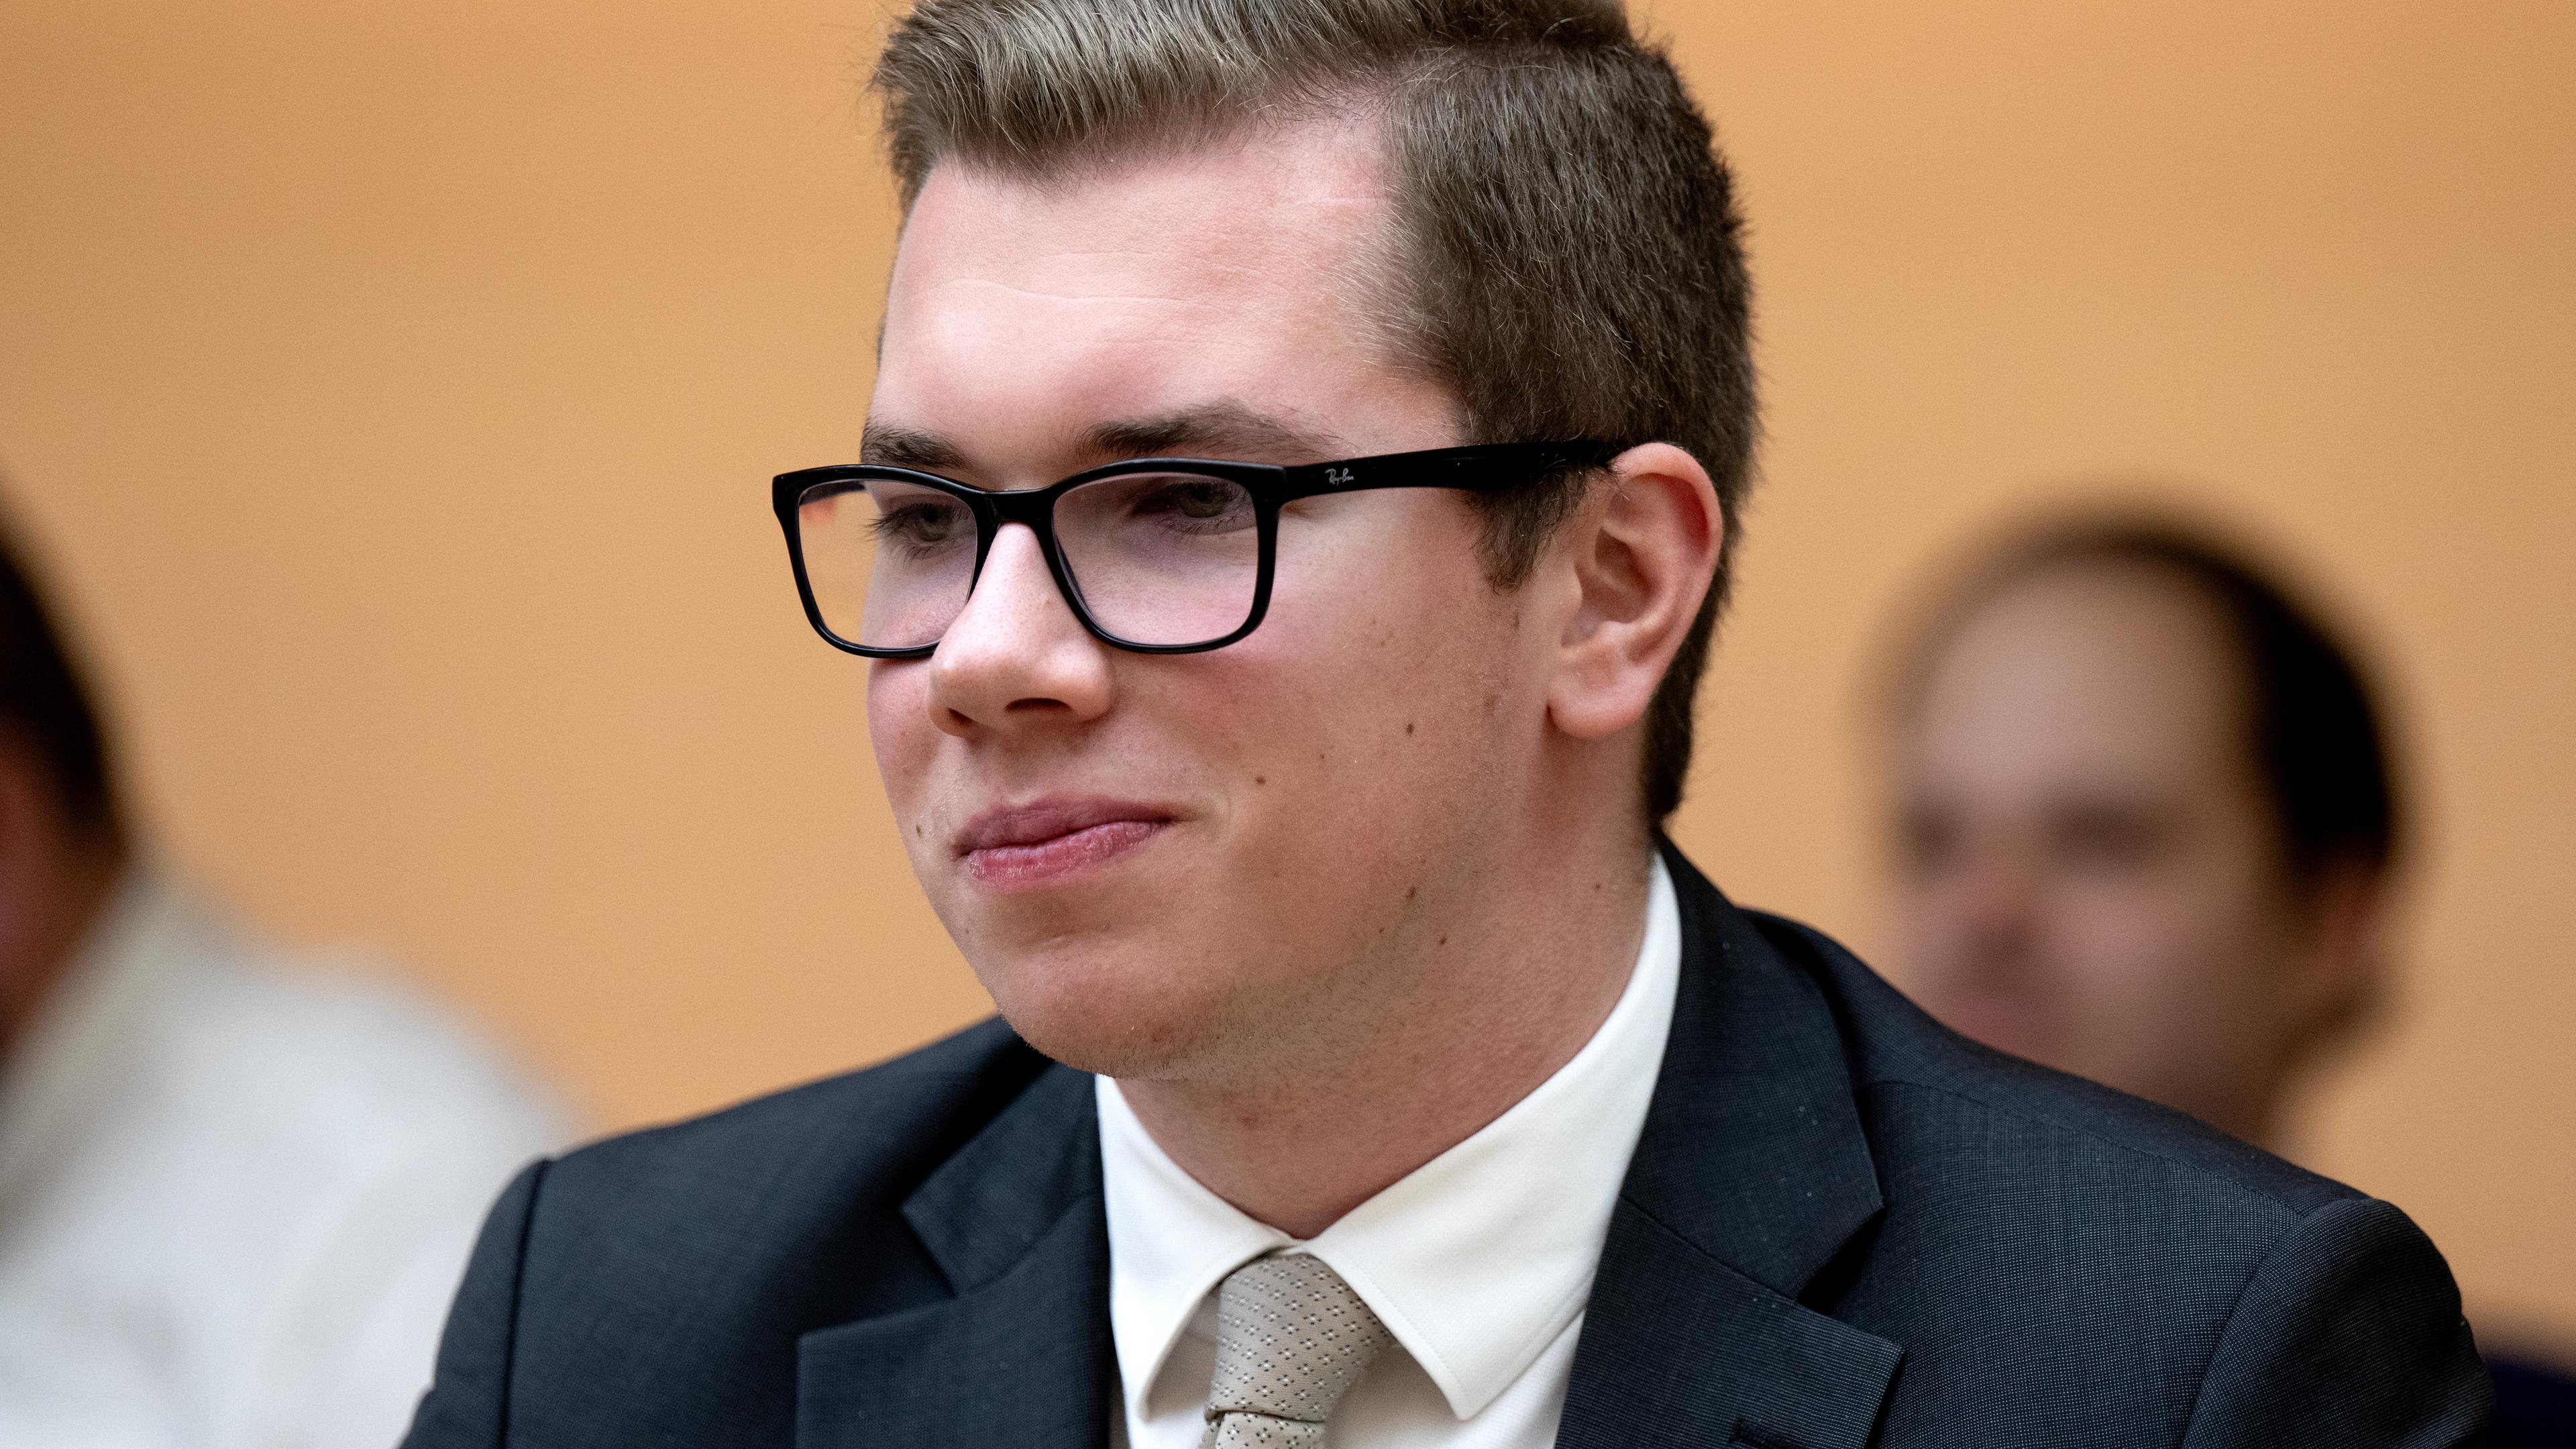 Bayern, München: Daniel Halemba, AfD-Politiker, nimmt im bayerischen Landtag an einer Plenarsitzung teil.